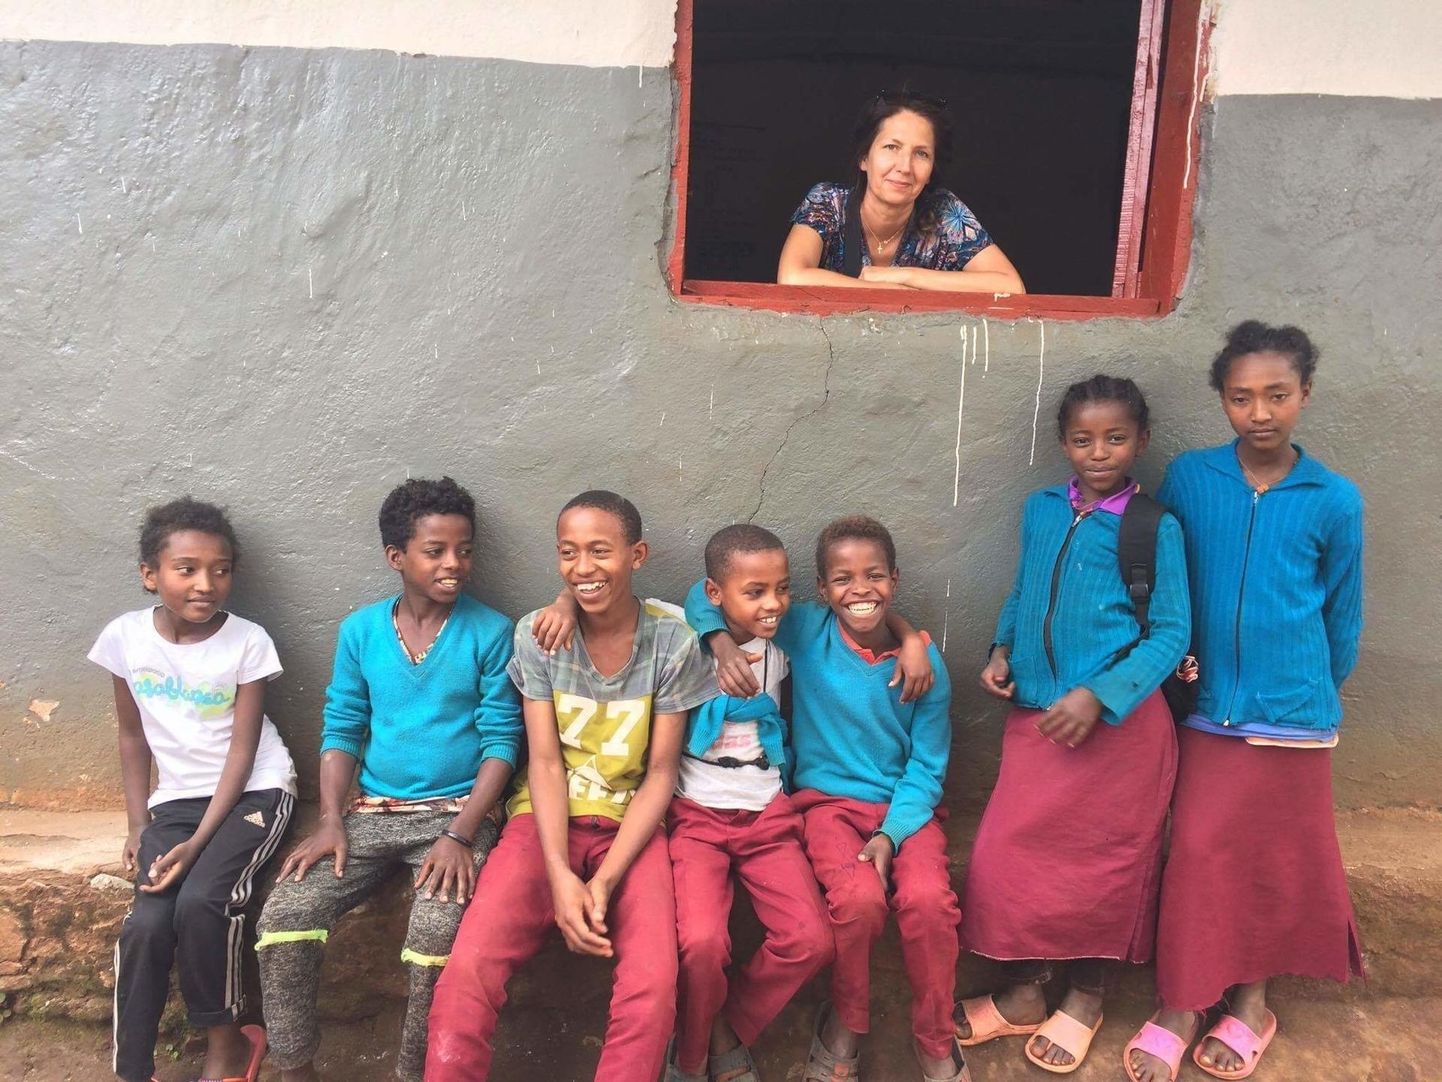 Hillevi Rosen Etioopias Soddo linnas kohalike lastega vahetundi veetmas.